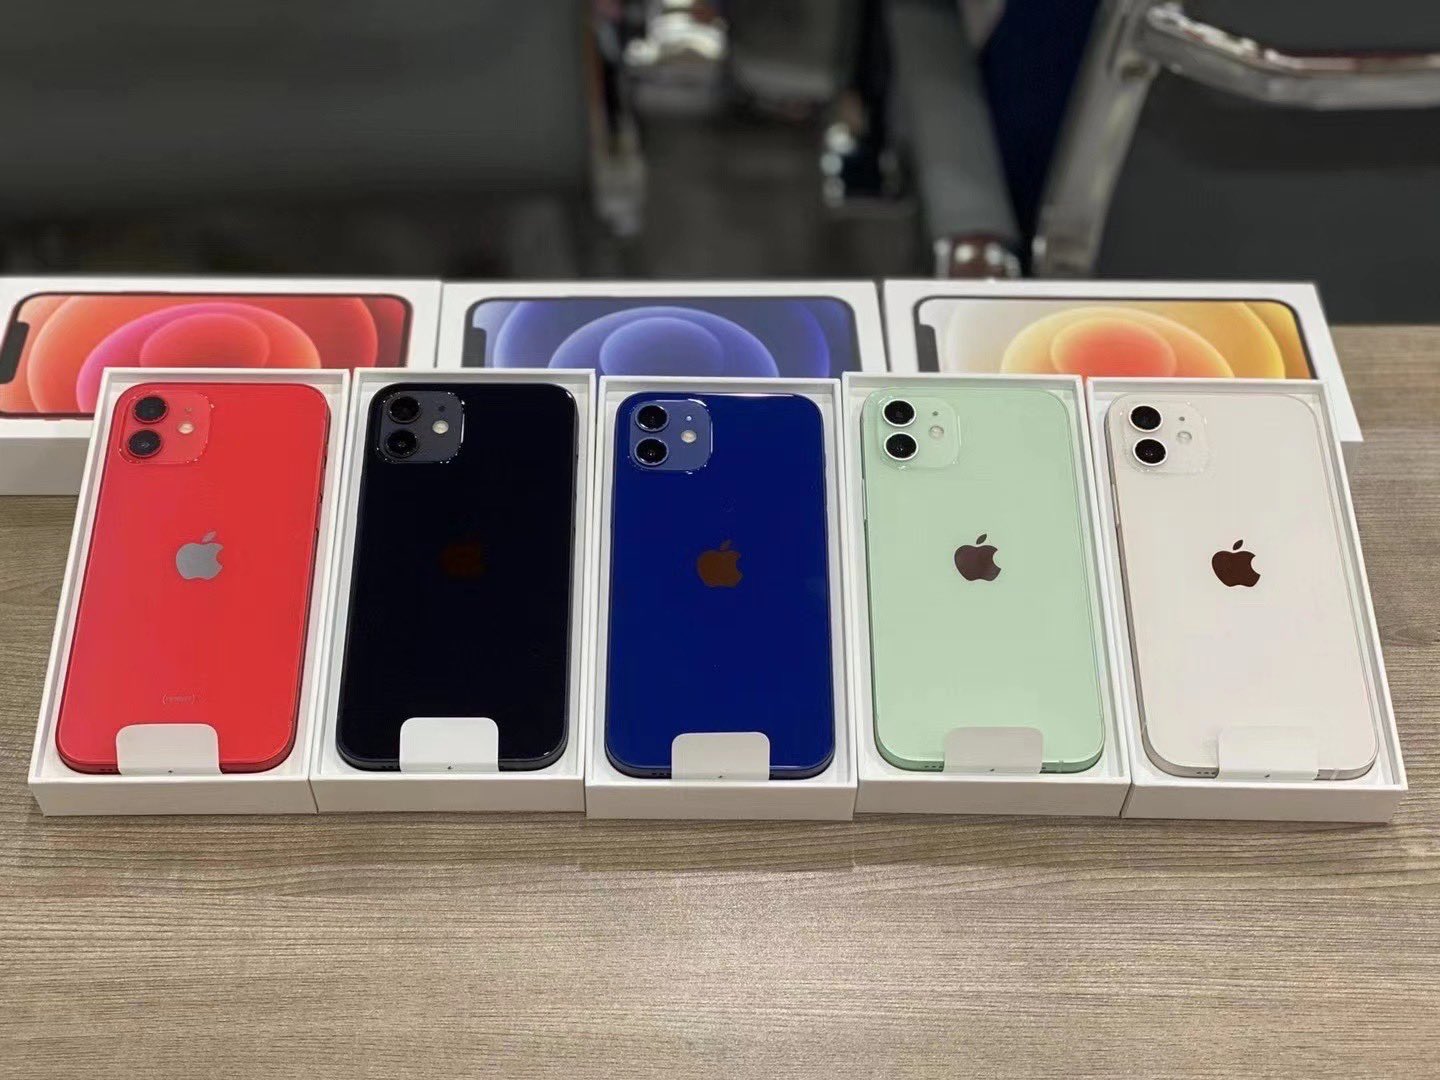 Ảnh trên tay thực tế đầu tiên của iPhone 12 chất lượng cao với tất cả các màu